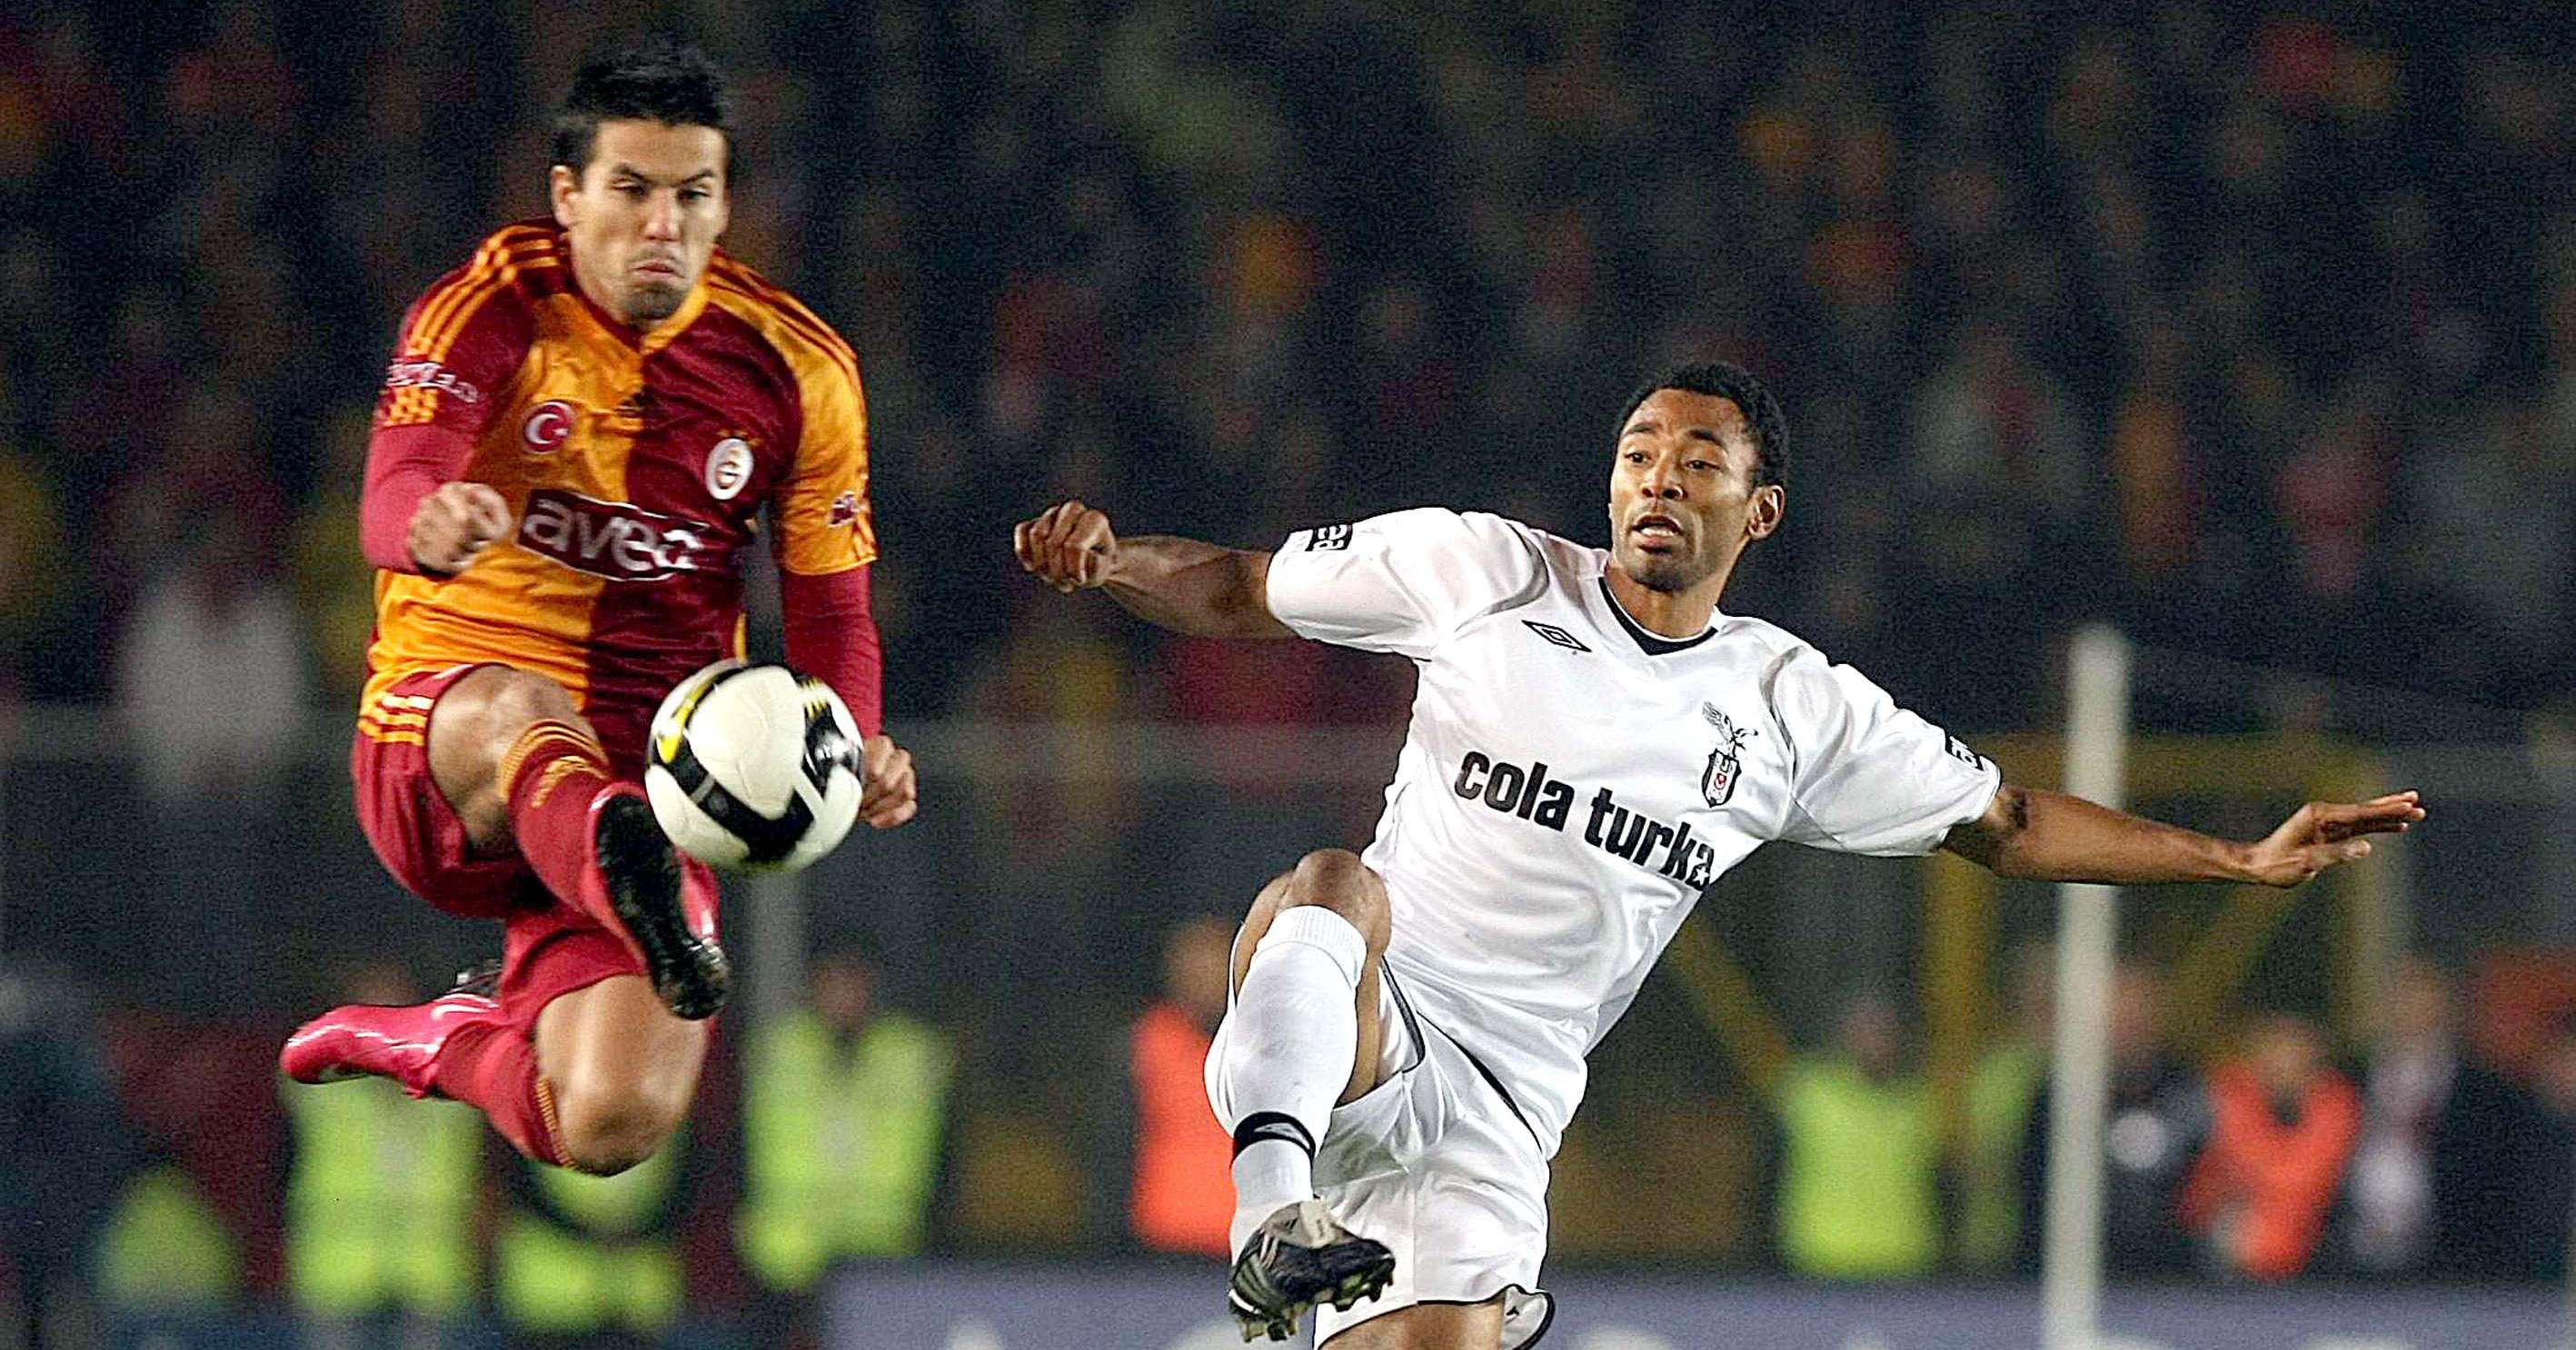 Milan Baros & Edouard Cisse Galatasaray vs. Besiktas 12/21/08